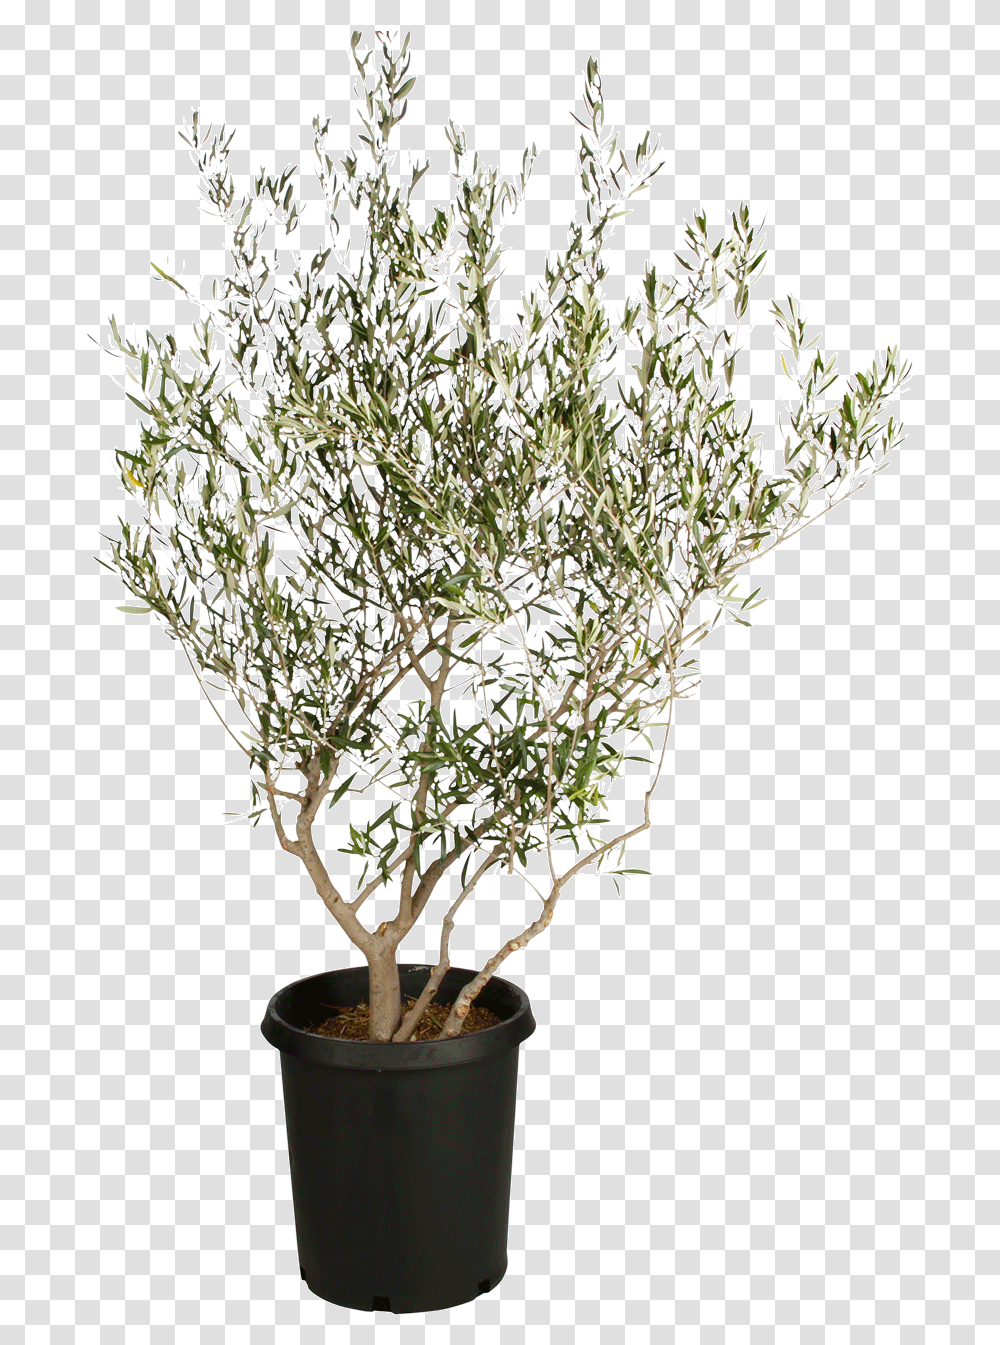 Download Fruitless Olive Tree Background Olive Tree, Plant, Food, Vase, Jar Transparent Png